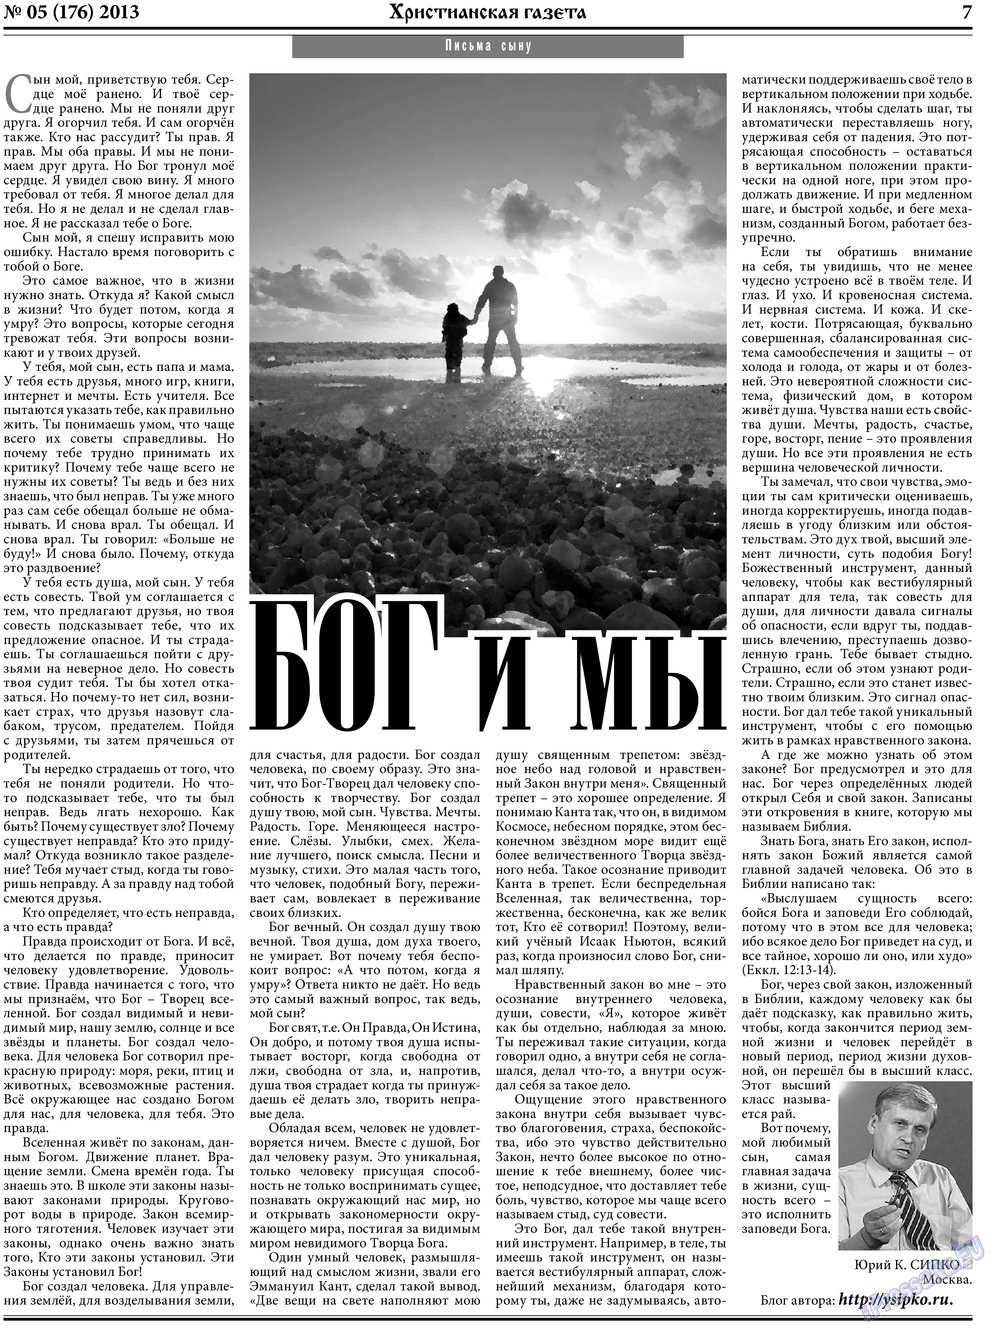 Христианская газета, газета. 2013 №5 стр.7